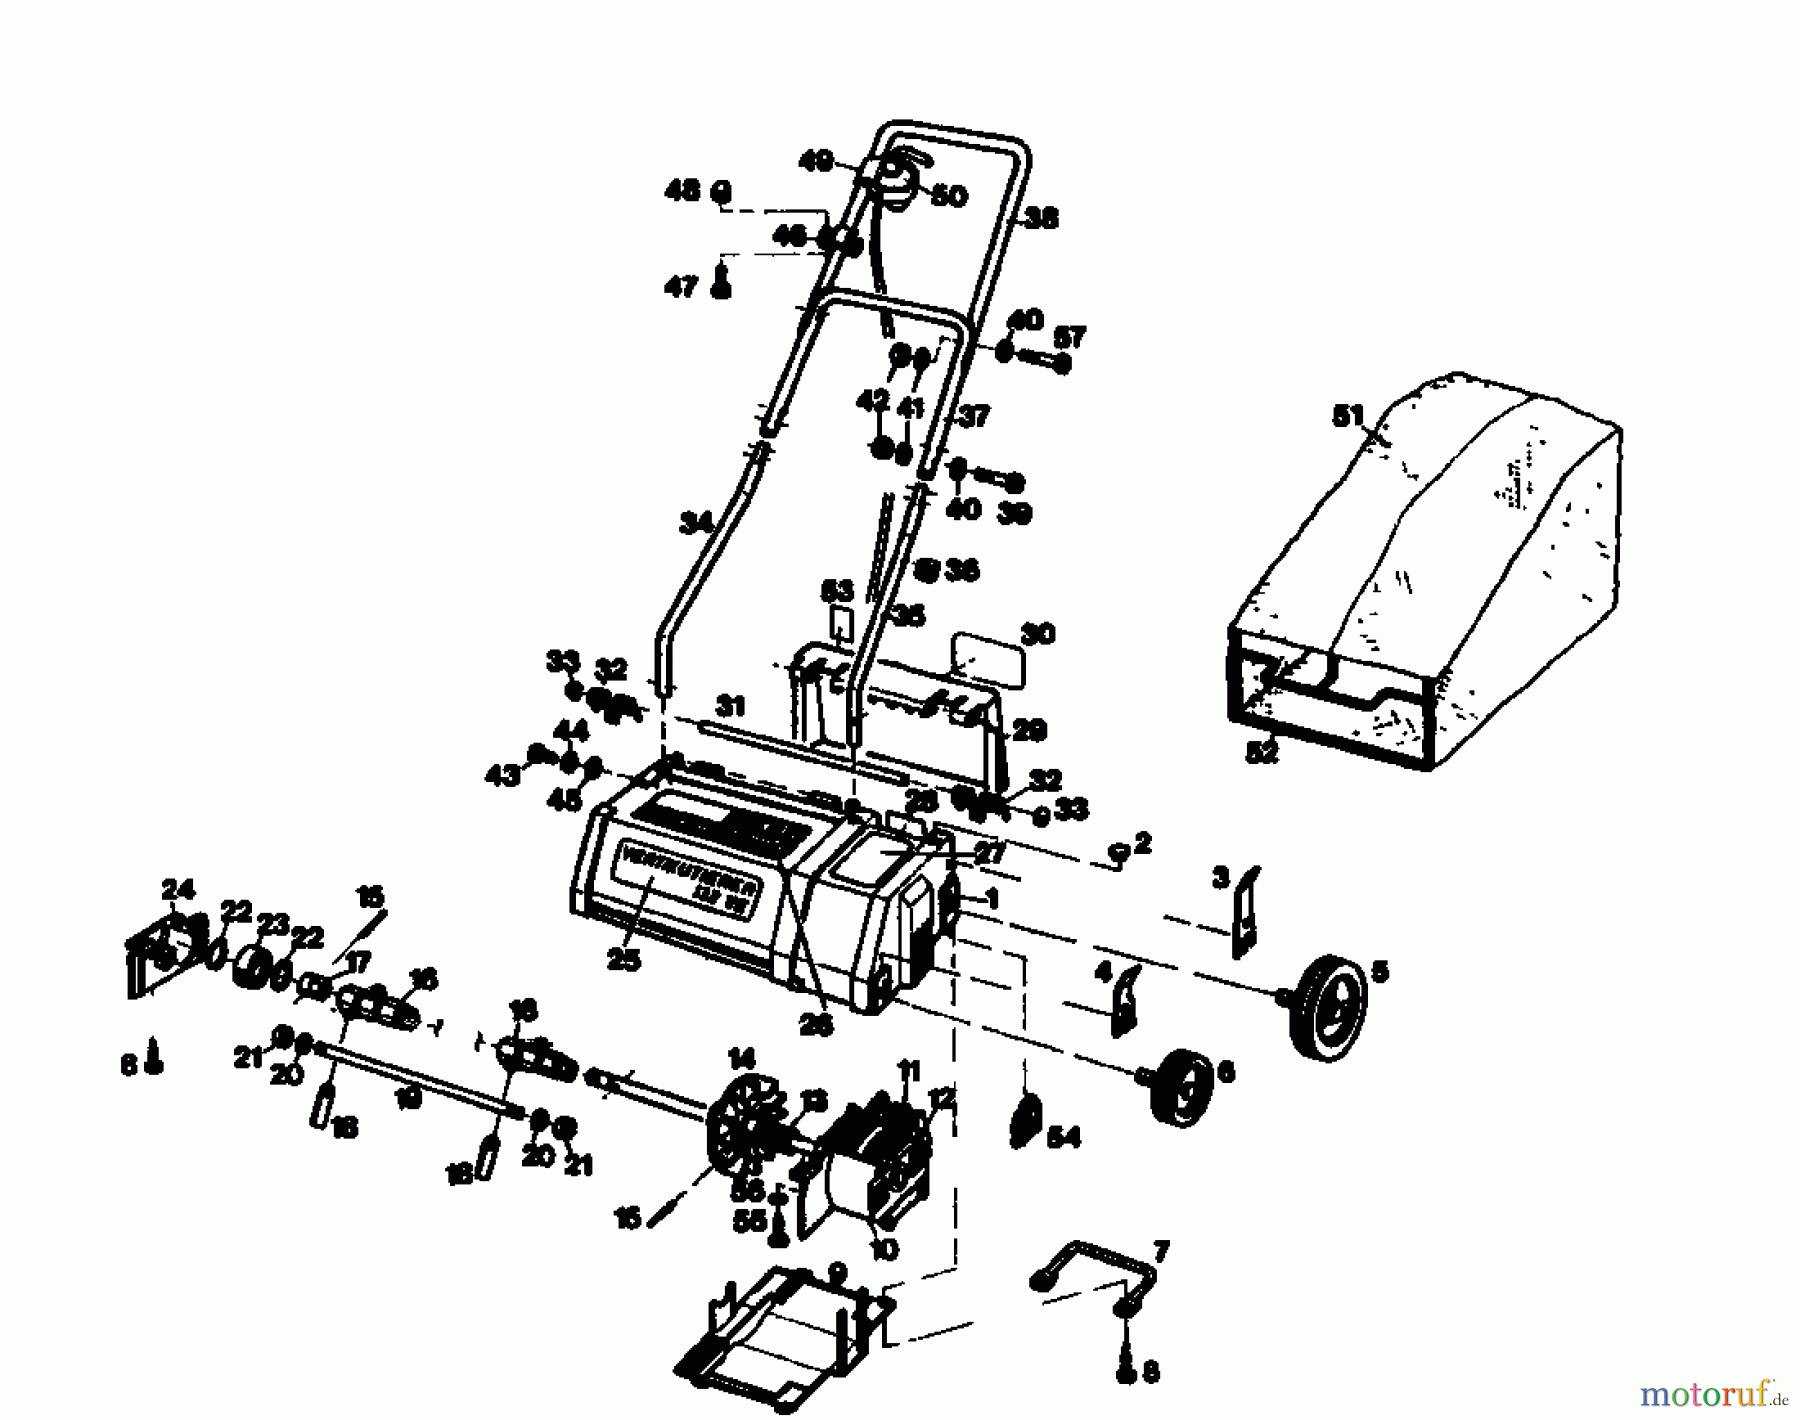  Golf Scarificateur électrique 132 VE 02890.01  (1986) Machine de base